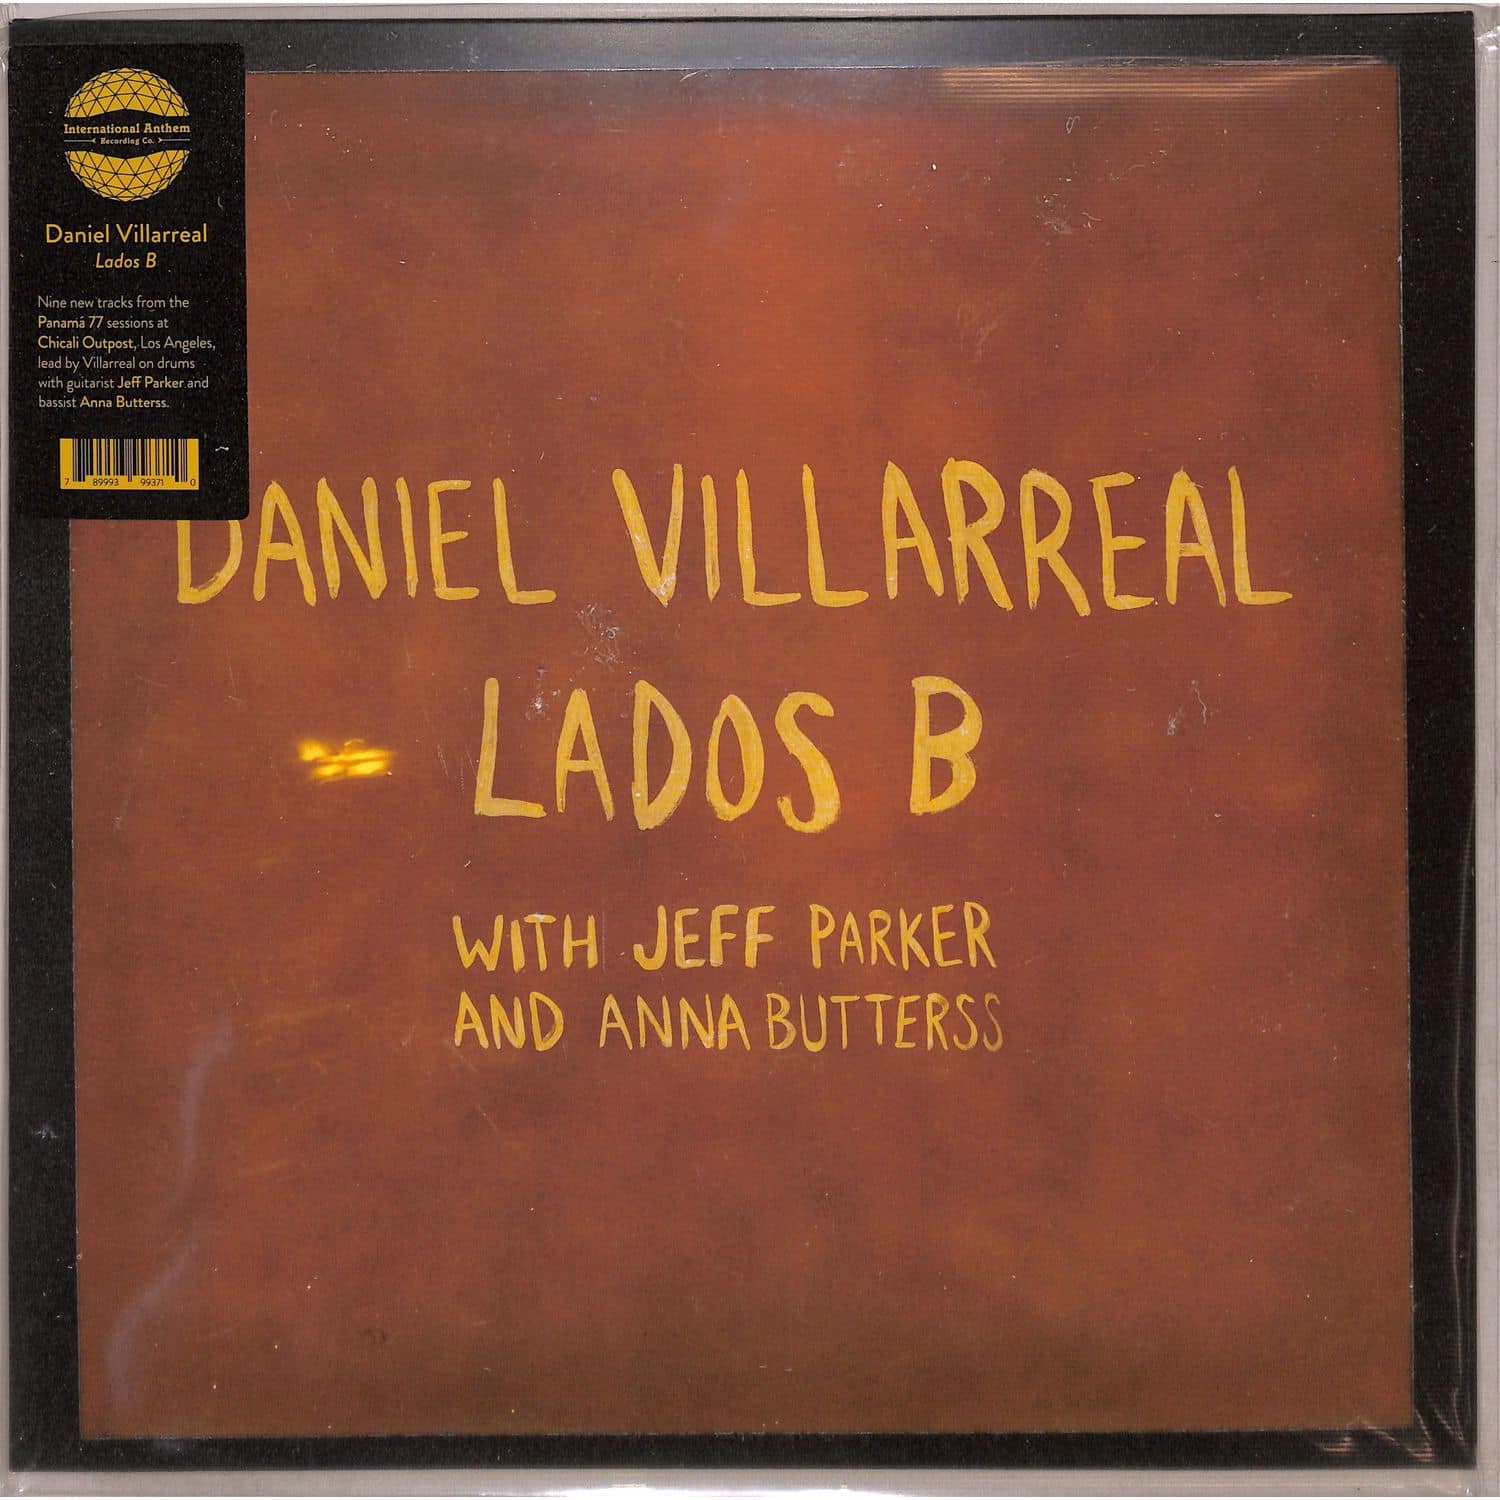 Daniel Villarreal - LADOS B 